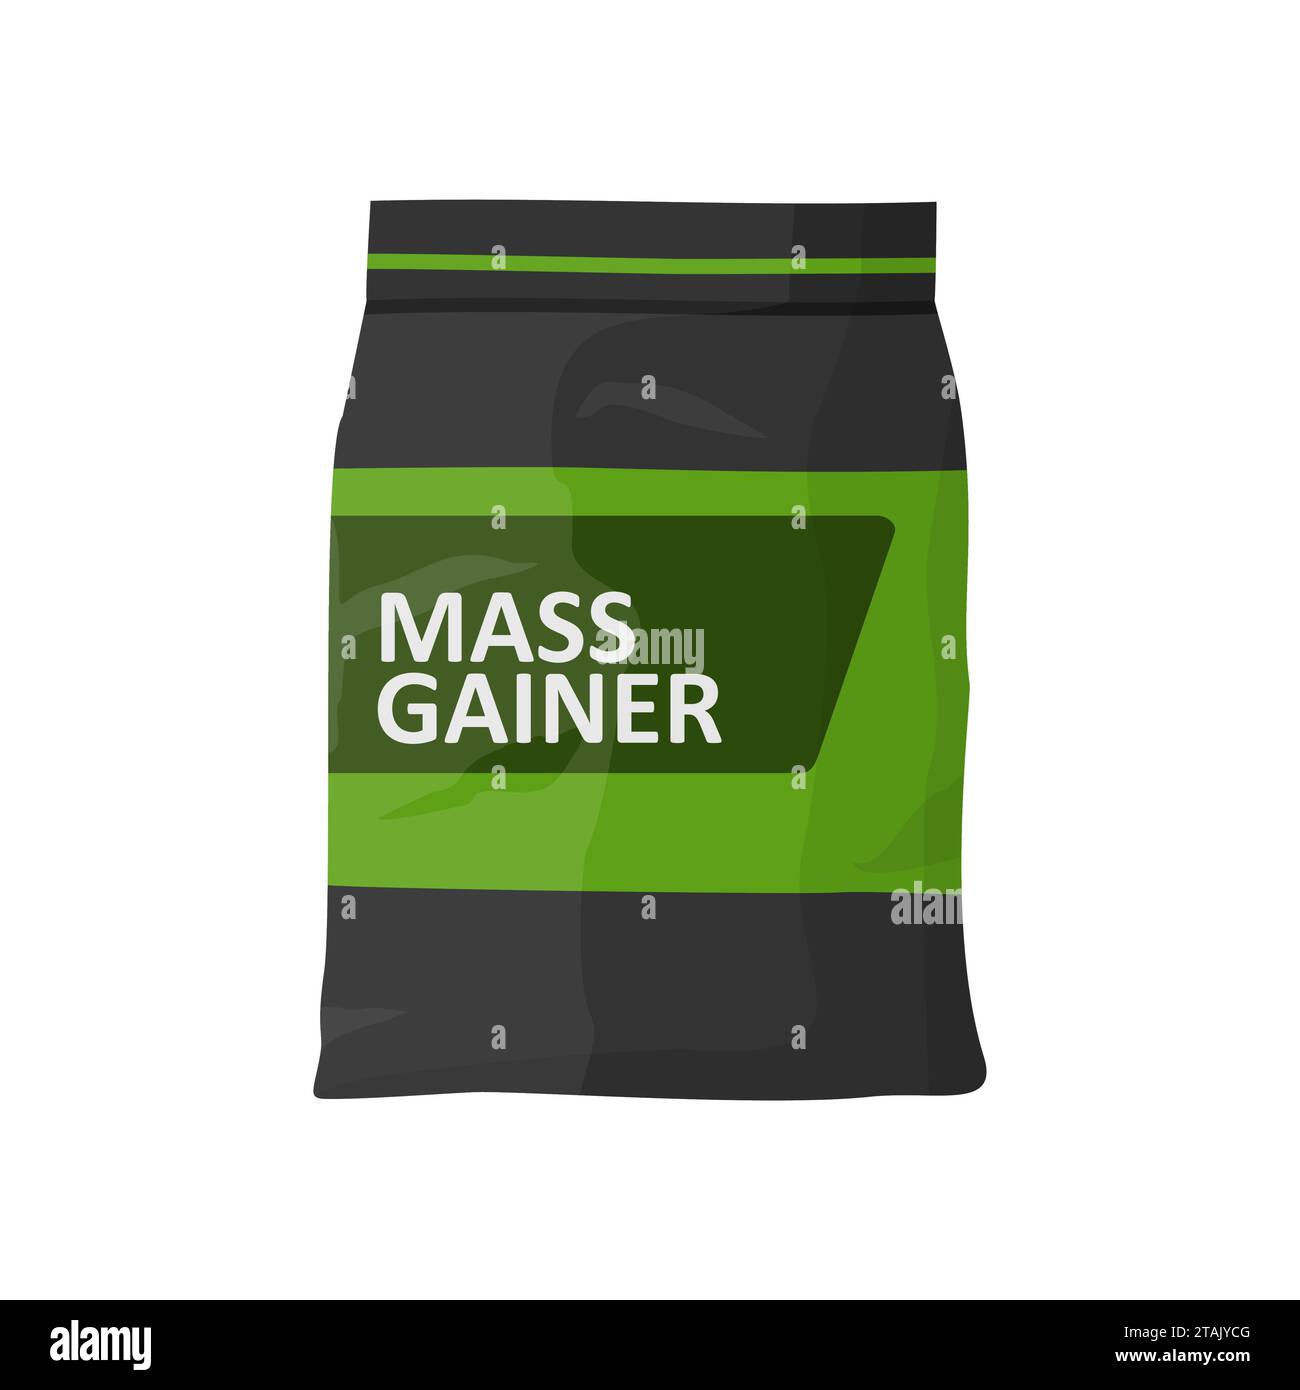 Mass Gainer Folie isoliert auf weißem Hintergrund. Sport Nutrition Icon Container Paket, Fitness Protein Power. Bodybuilding Sportnahrung. Becher oder Flasche Stock Vektor